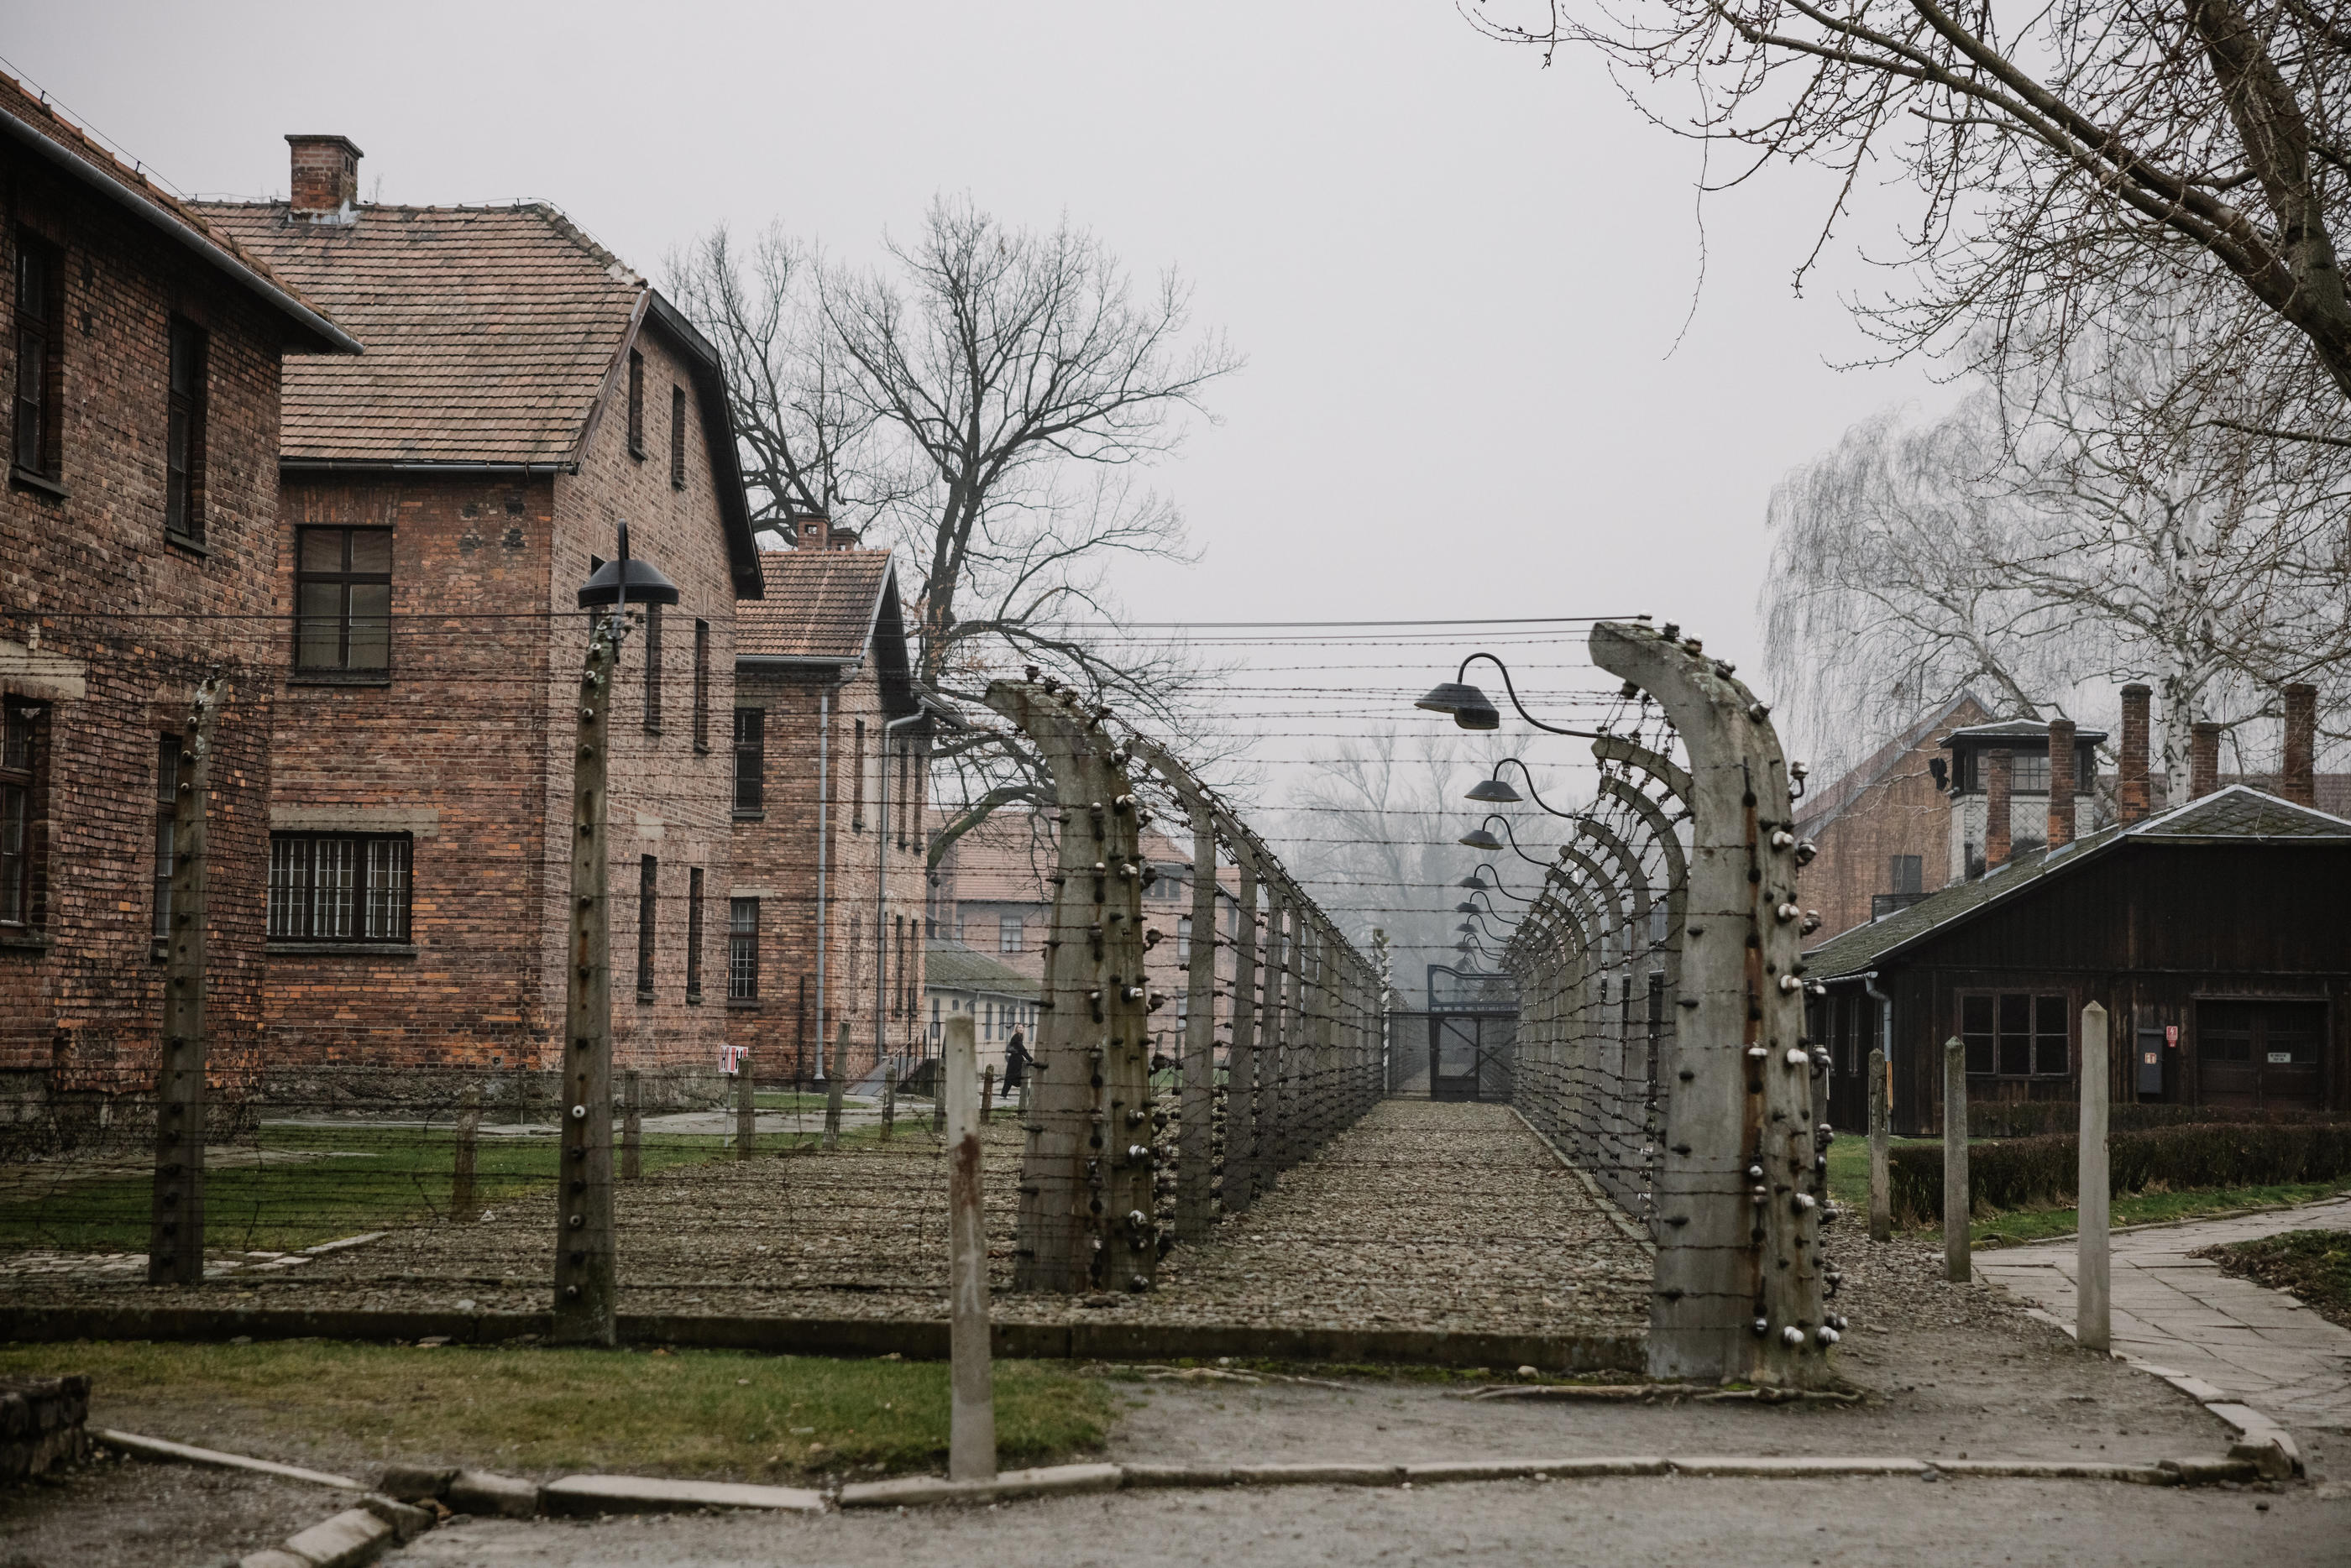 Plus de 1,1 million de personnes, dont près de 1 million de juifs, ont été assassinés par les nazis dans le camp d'Auschwitz-Birkenau (Pologne). LP/Arnaud Dumontier